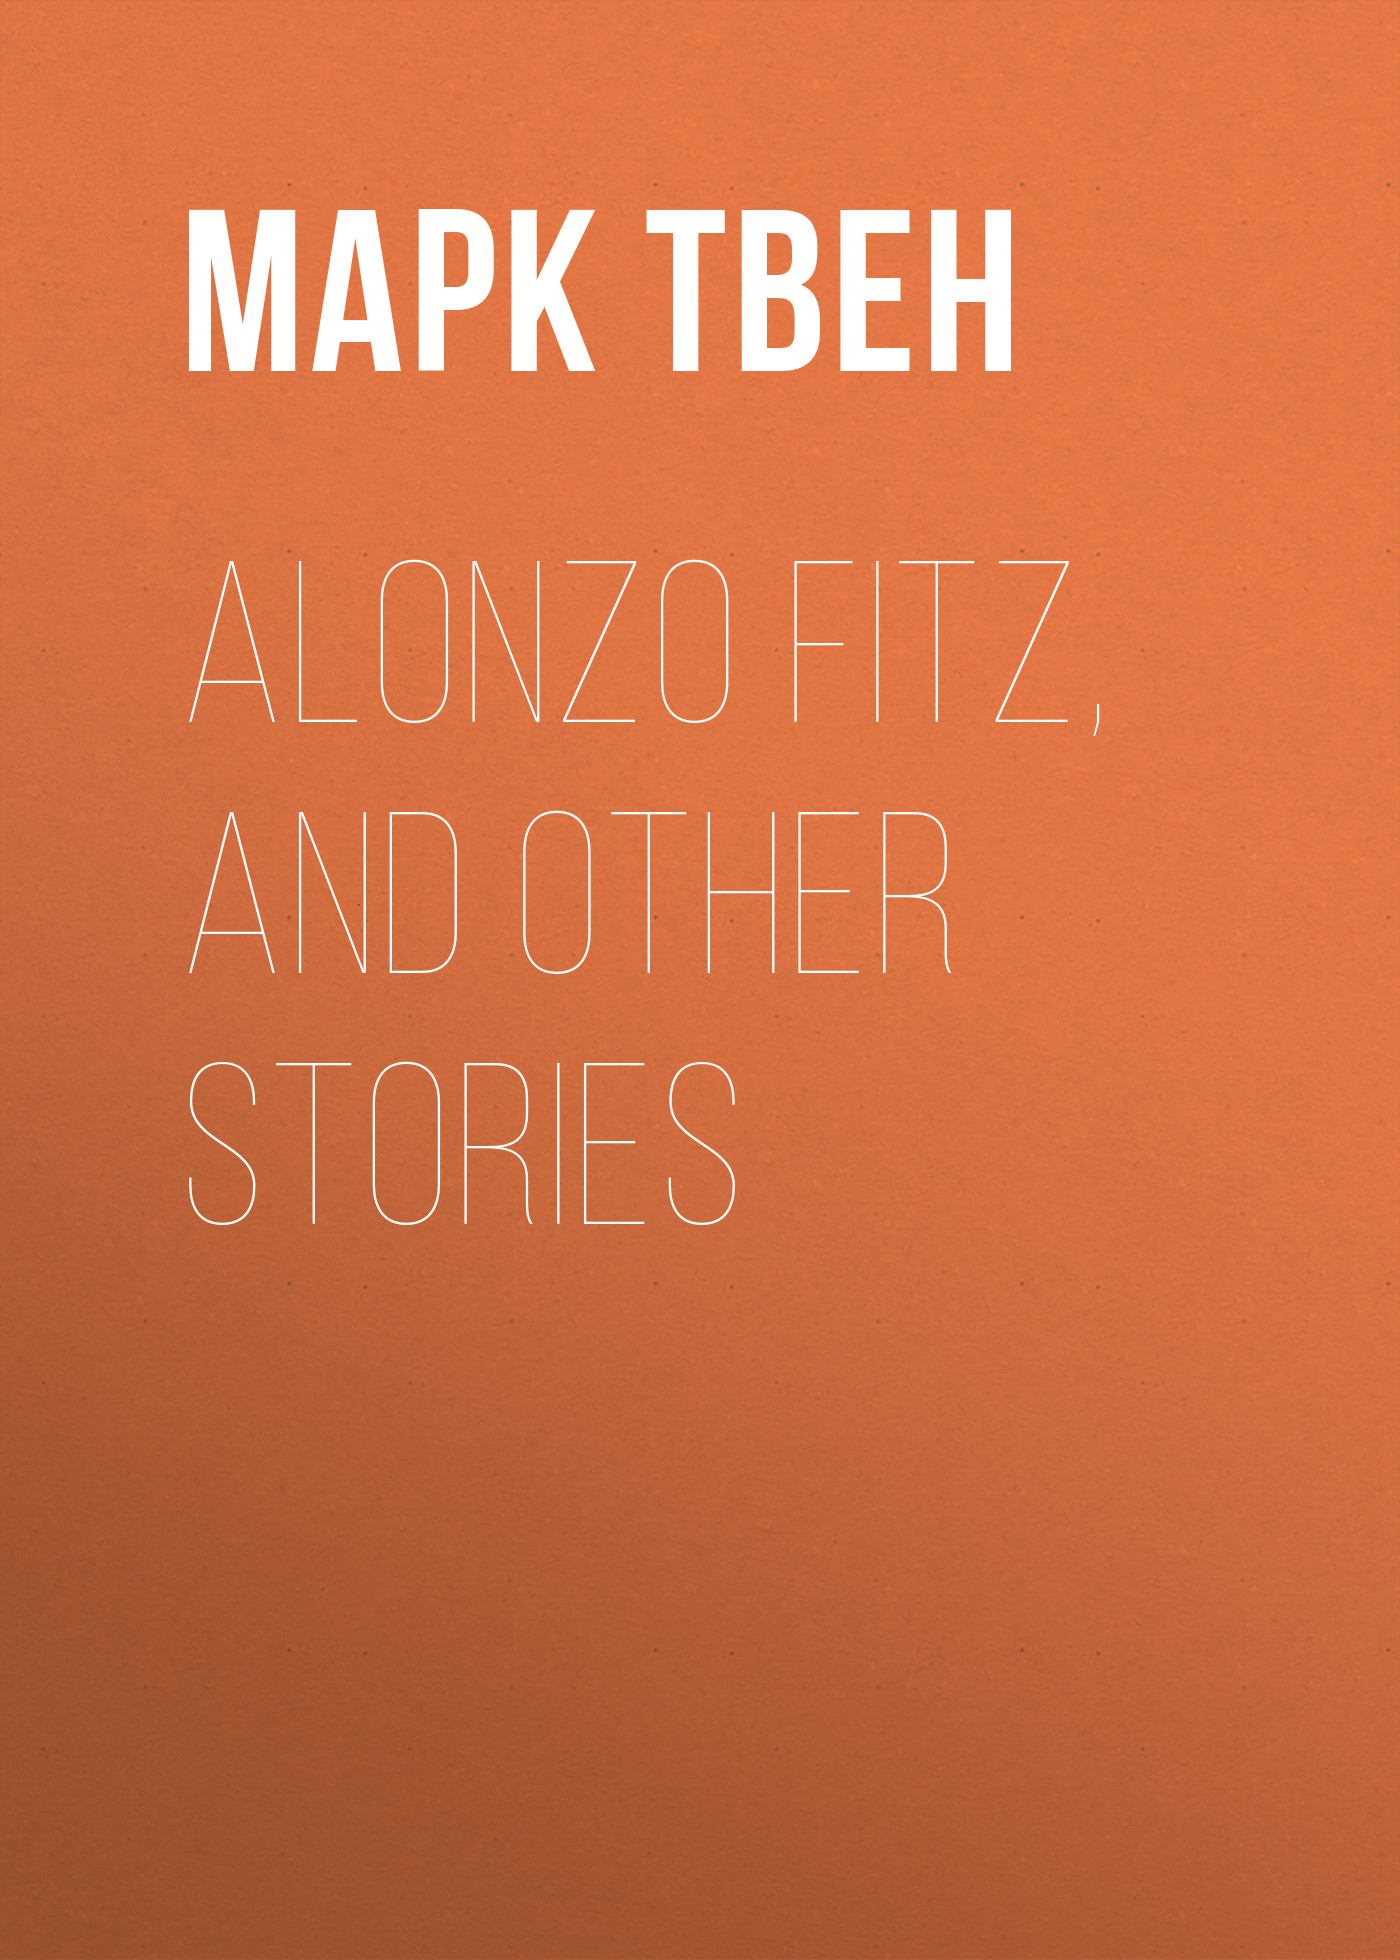 Книга Alonzo Fitz, and Other Stories из серии , созданная Марк Твен, может относится к жанру Зарубежная старинная литература, Зарубежная классика. Стоимость электронной книги Alonzo Fitz, and Other Stories с идентификатором 25474671 составляет 0 руб.